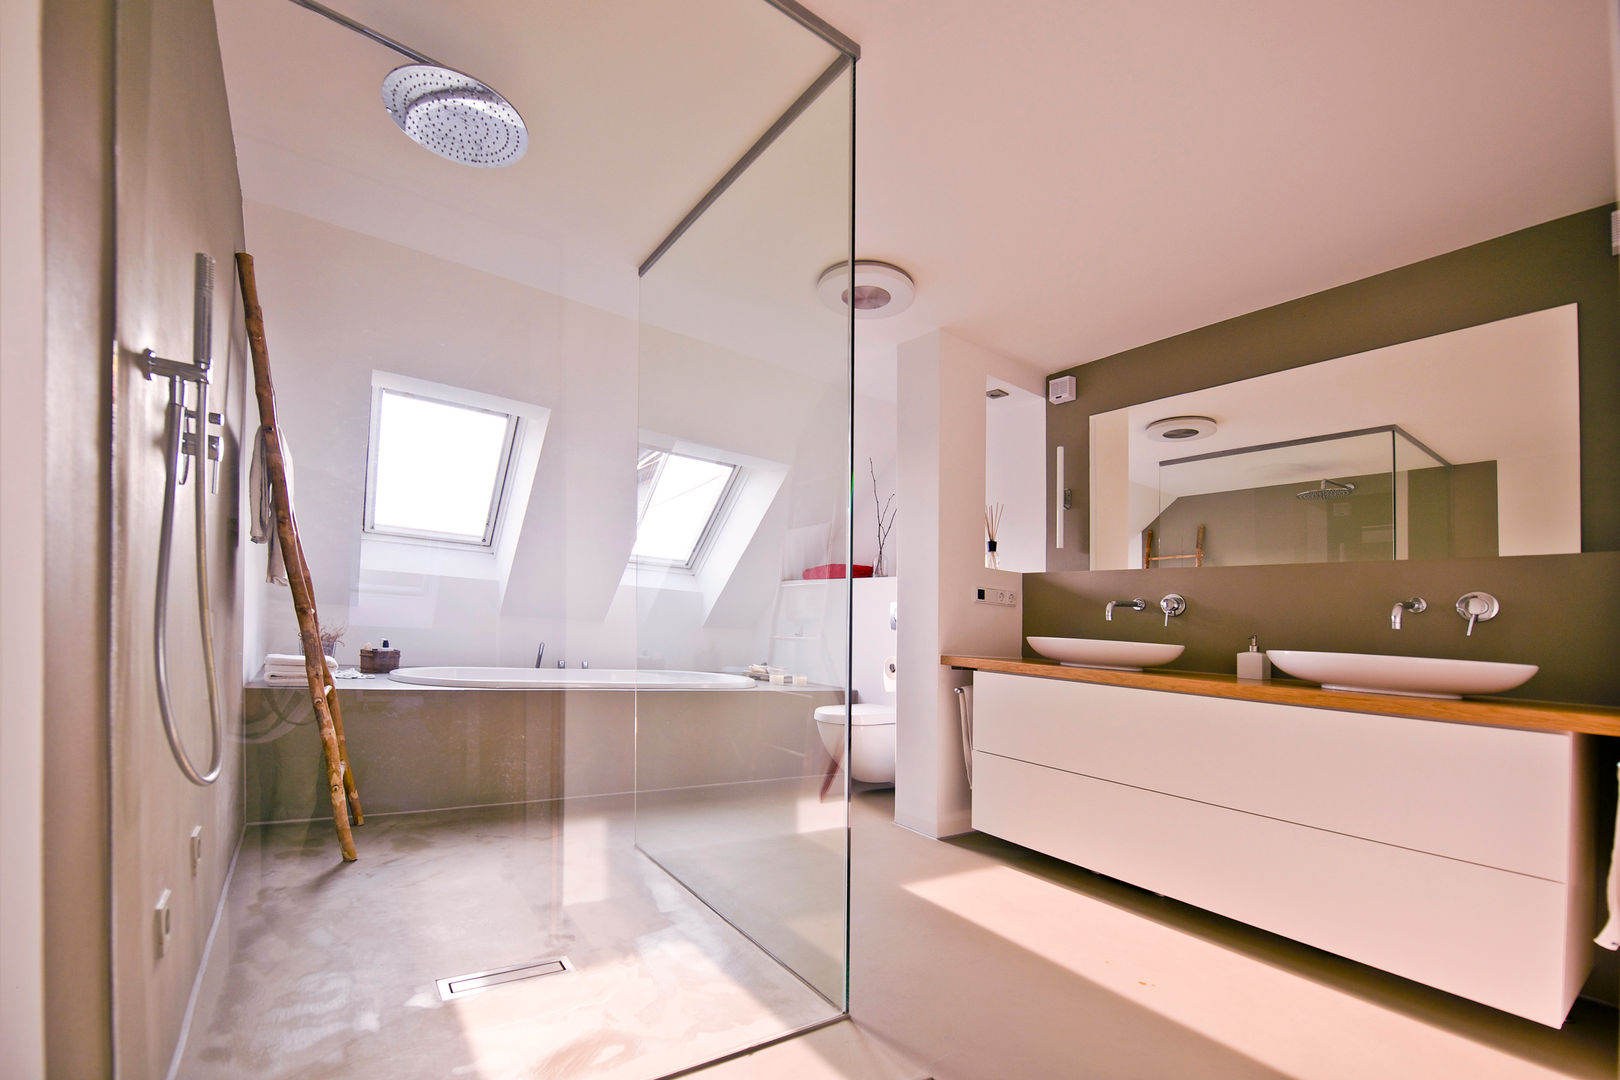 140 qm Galeriewohnung, freudenspiel - Interior Design freudenspiel - Interior Design Industrial style bathroom